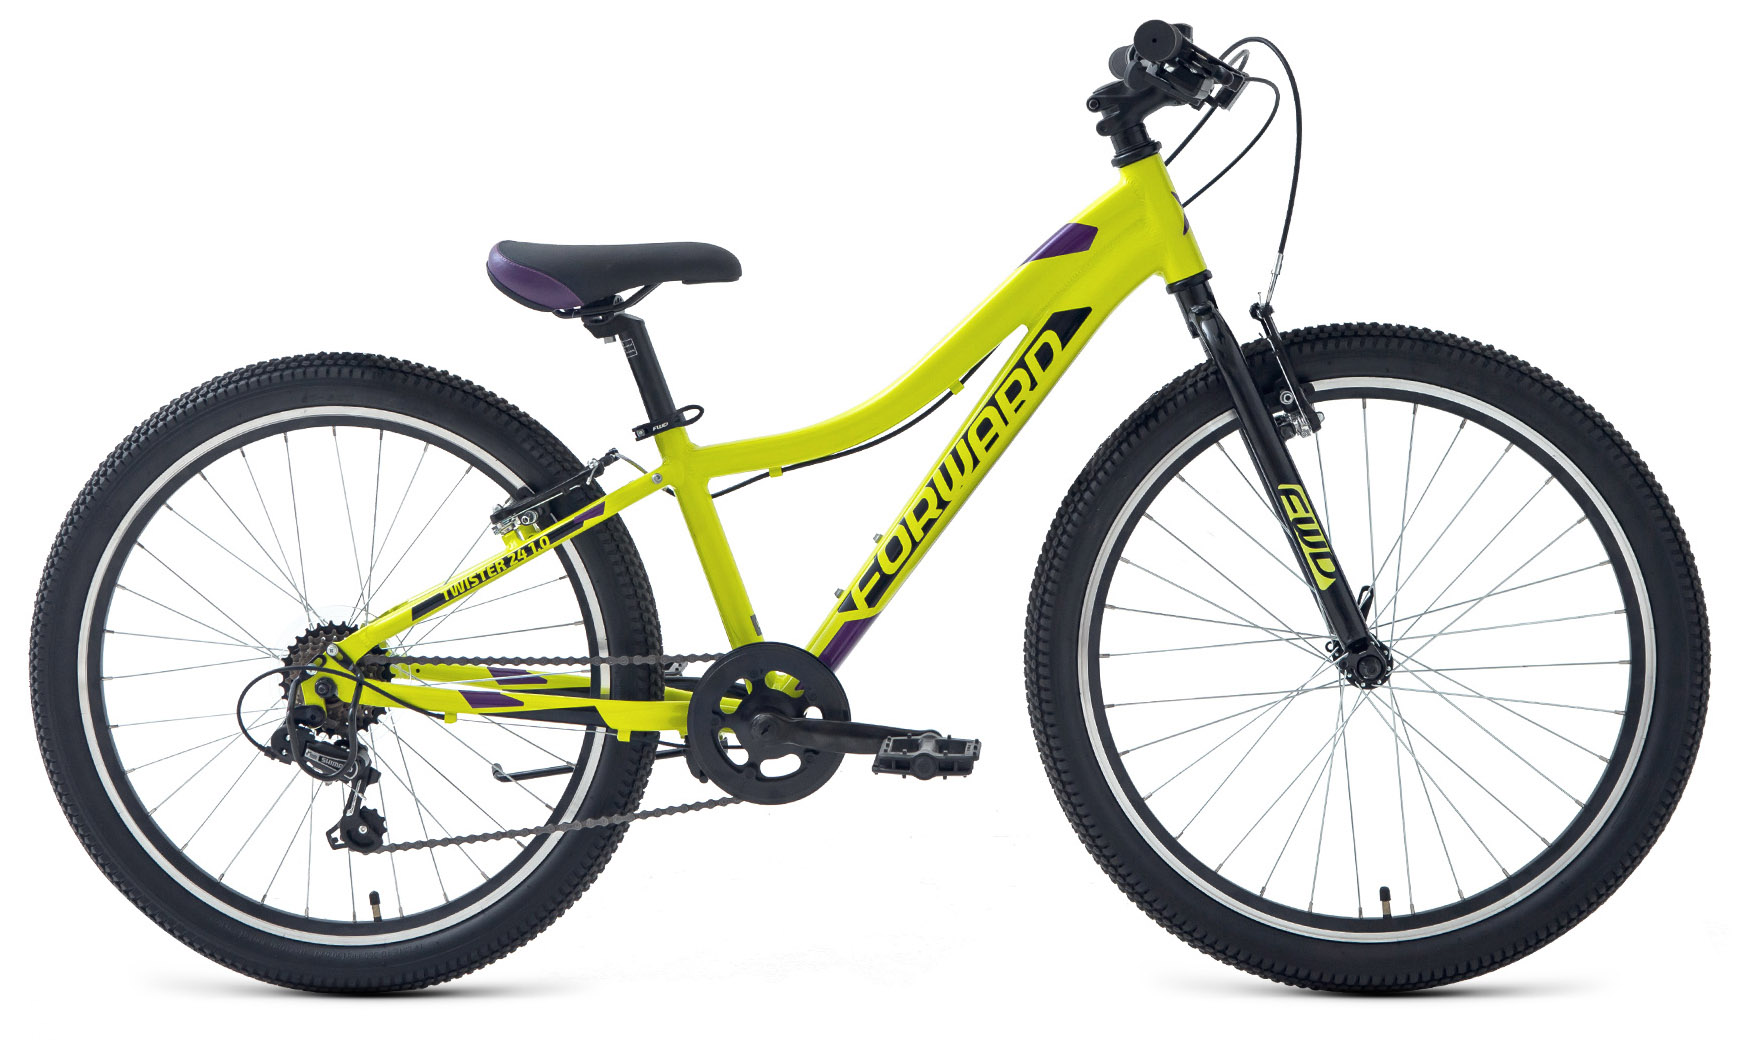  Отзывы о Подростковом велосипеде Forward Twister 24 1.2 (2021) 2021